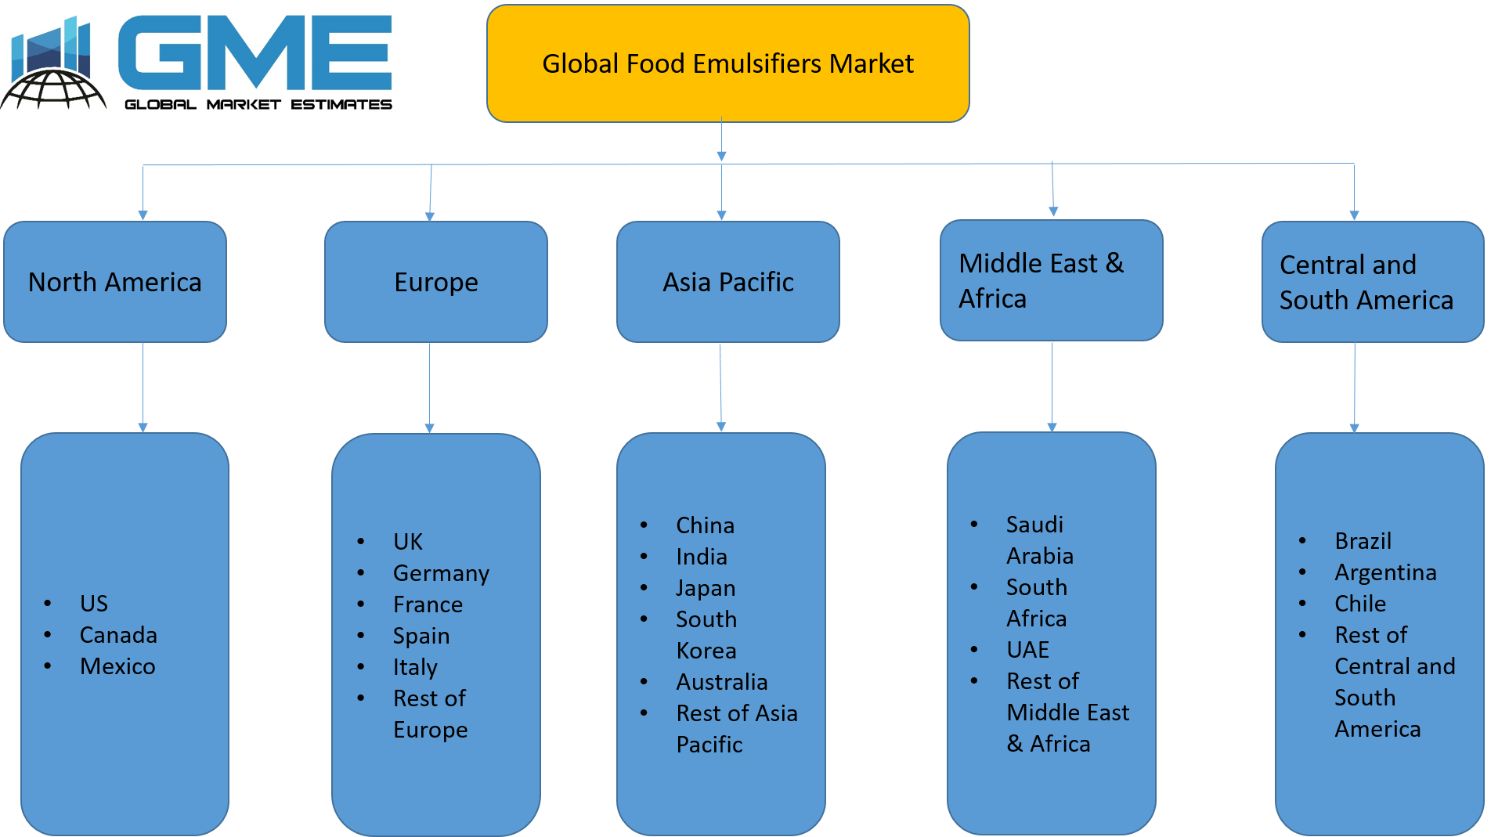 Global Food Emulsifiers Market - Regional Analysis